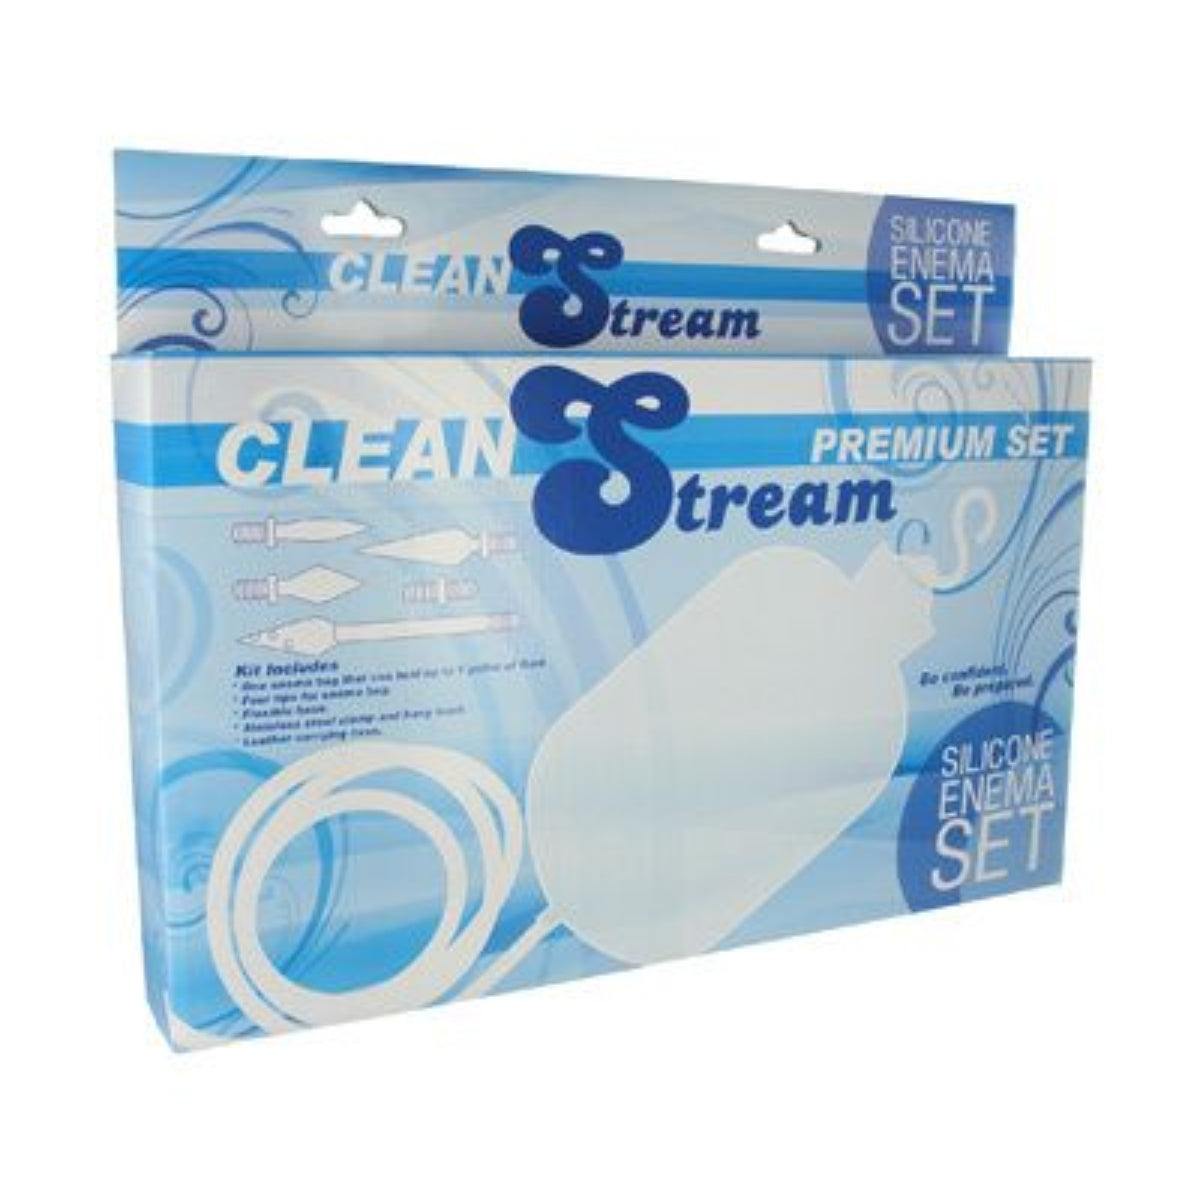 Cleanstream Premium Silicone Enema Set - Simply Pleasure